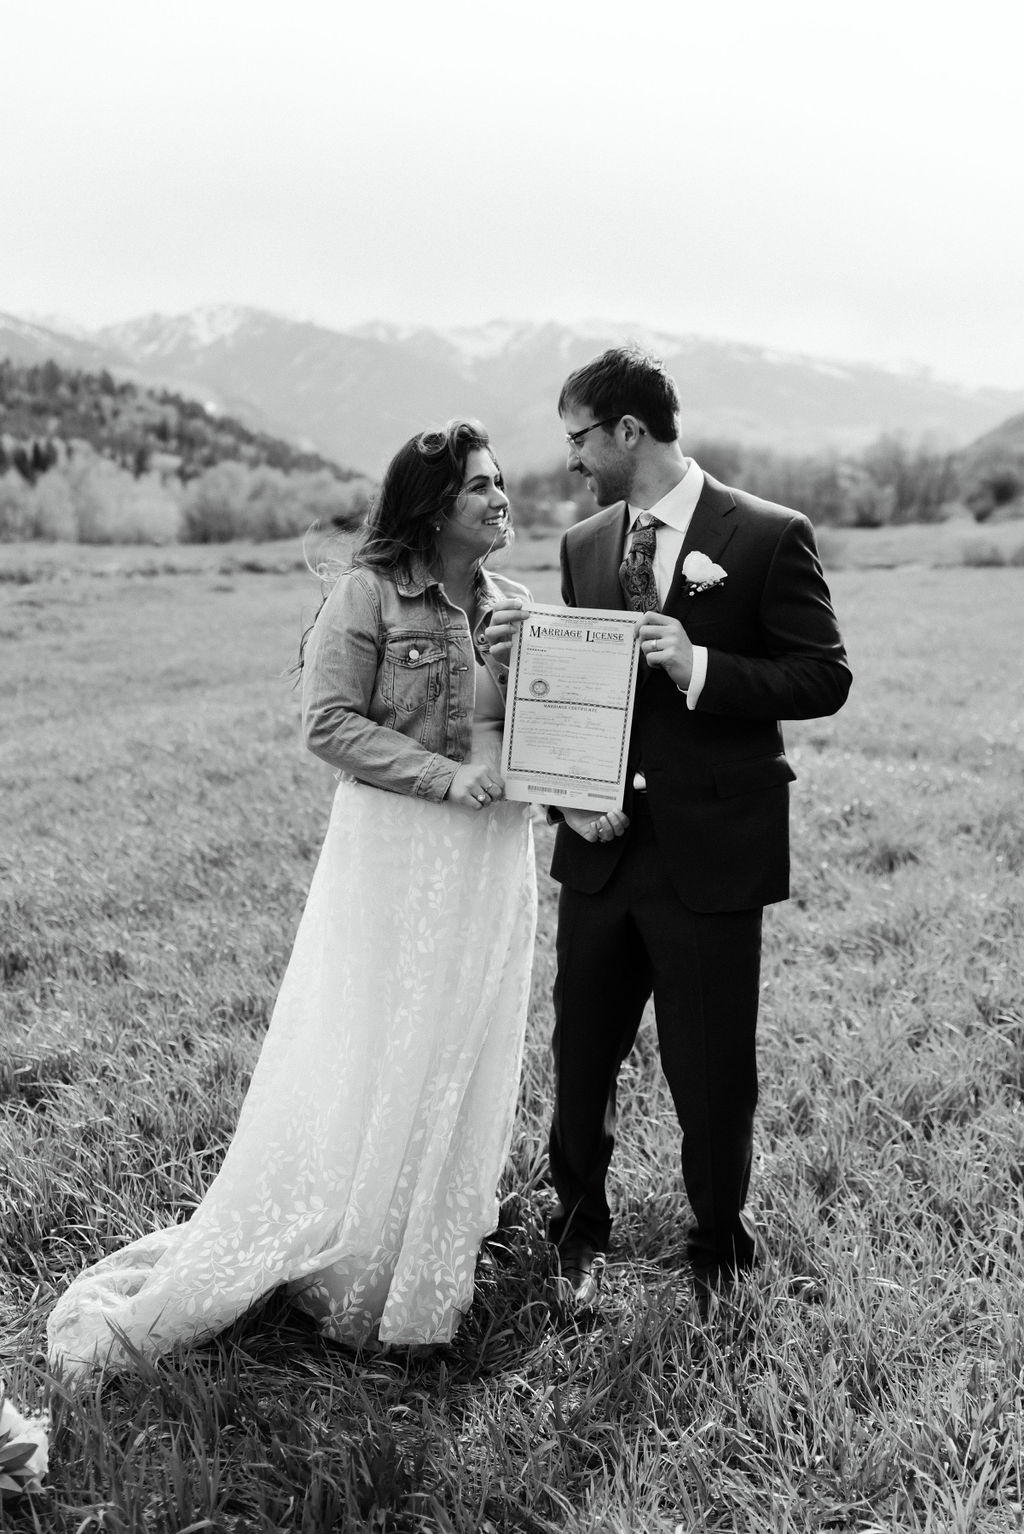 Just married in Aspen Colorado